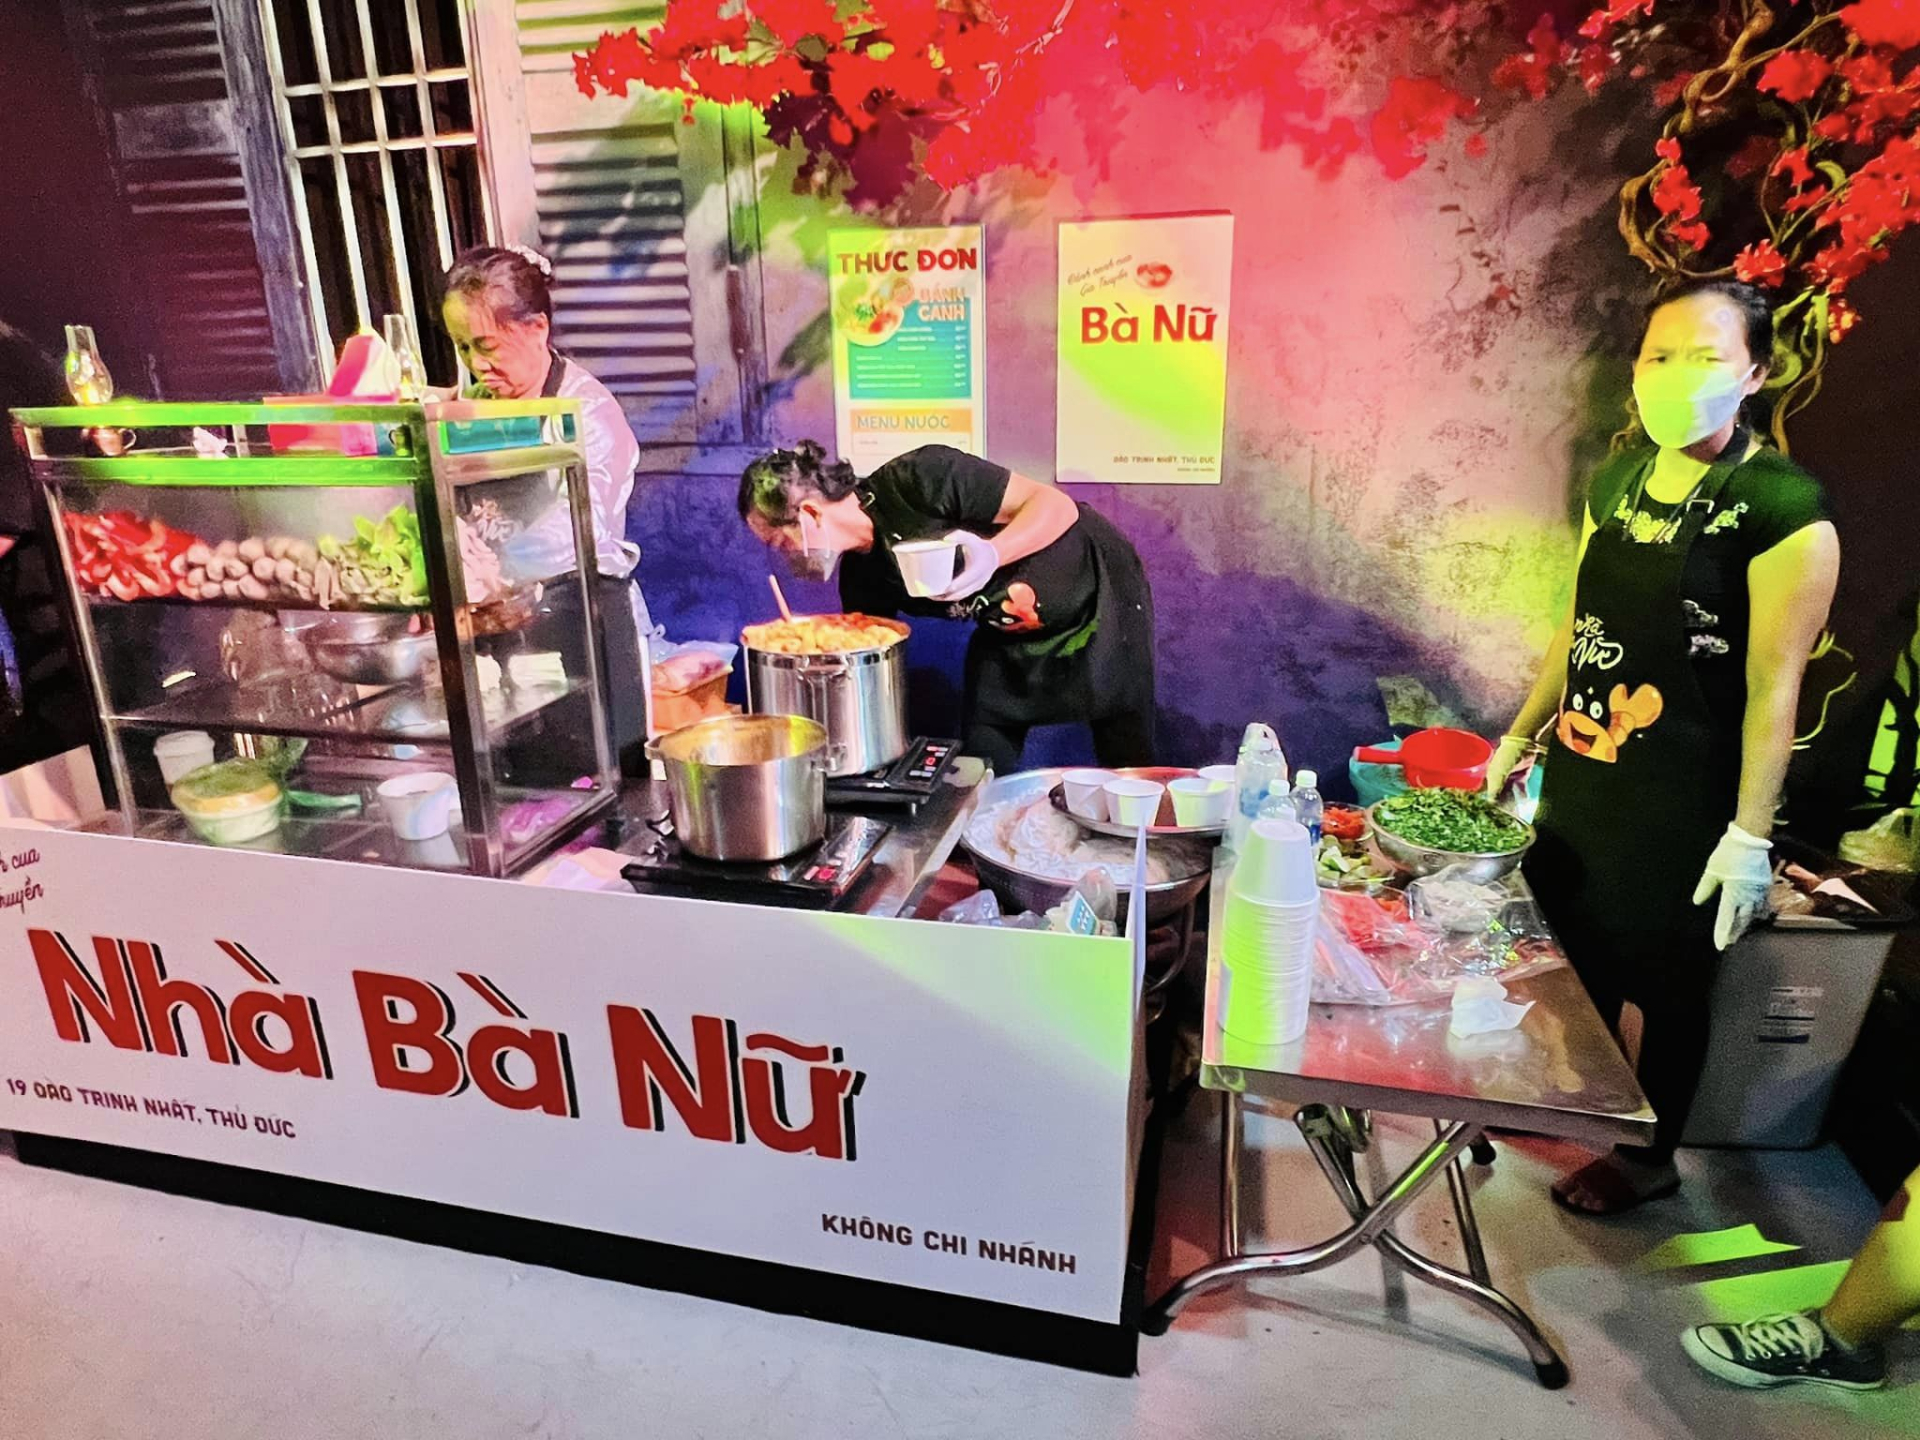 Trấn Thành bao nguyên gánh bánh canh 300k hot nhất Sài Gòn đãi cả showbiz, đem lên phim điện ảnh - ảnh 1